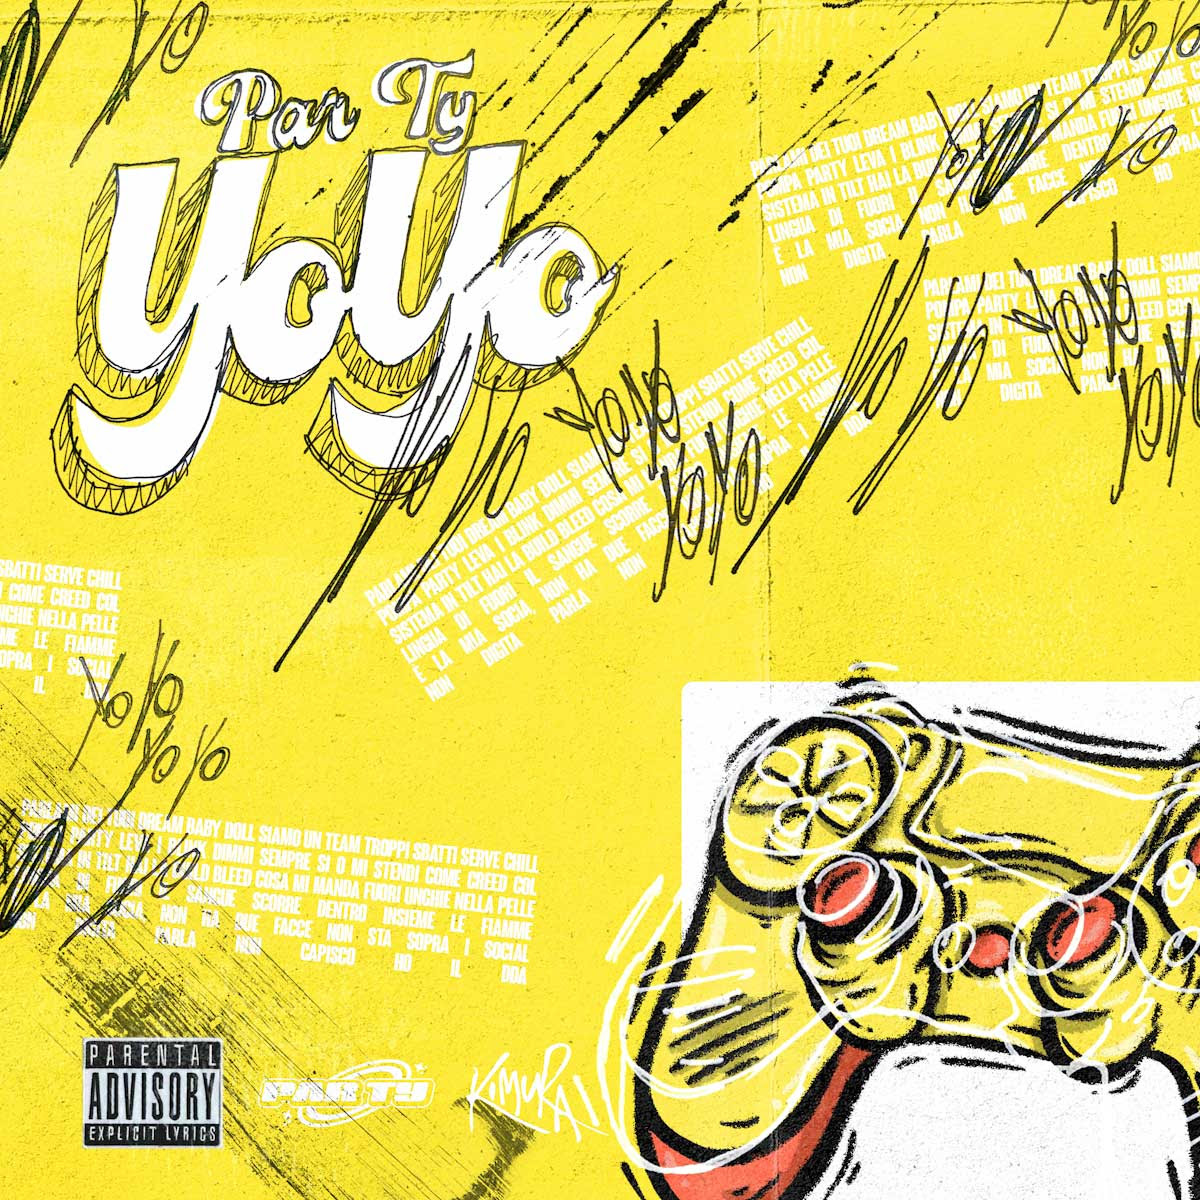 PAR TY: venerdì 8 settembre esce in radio e in digitale “YoYo” il nuovo singolo